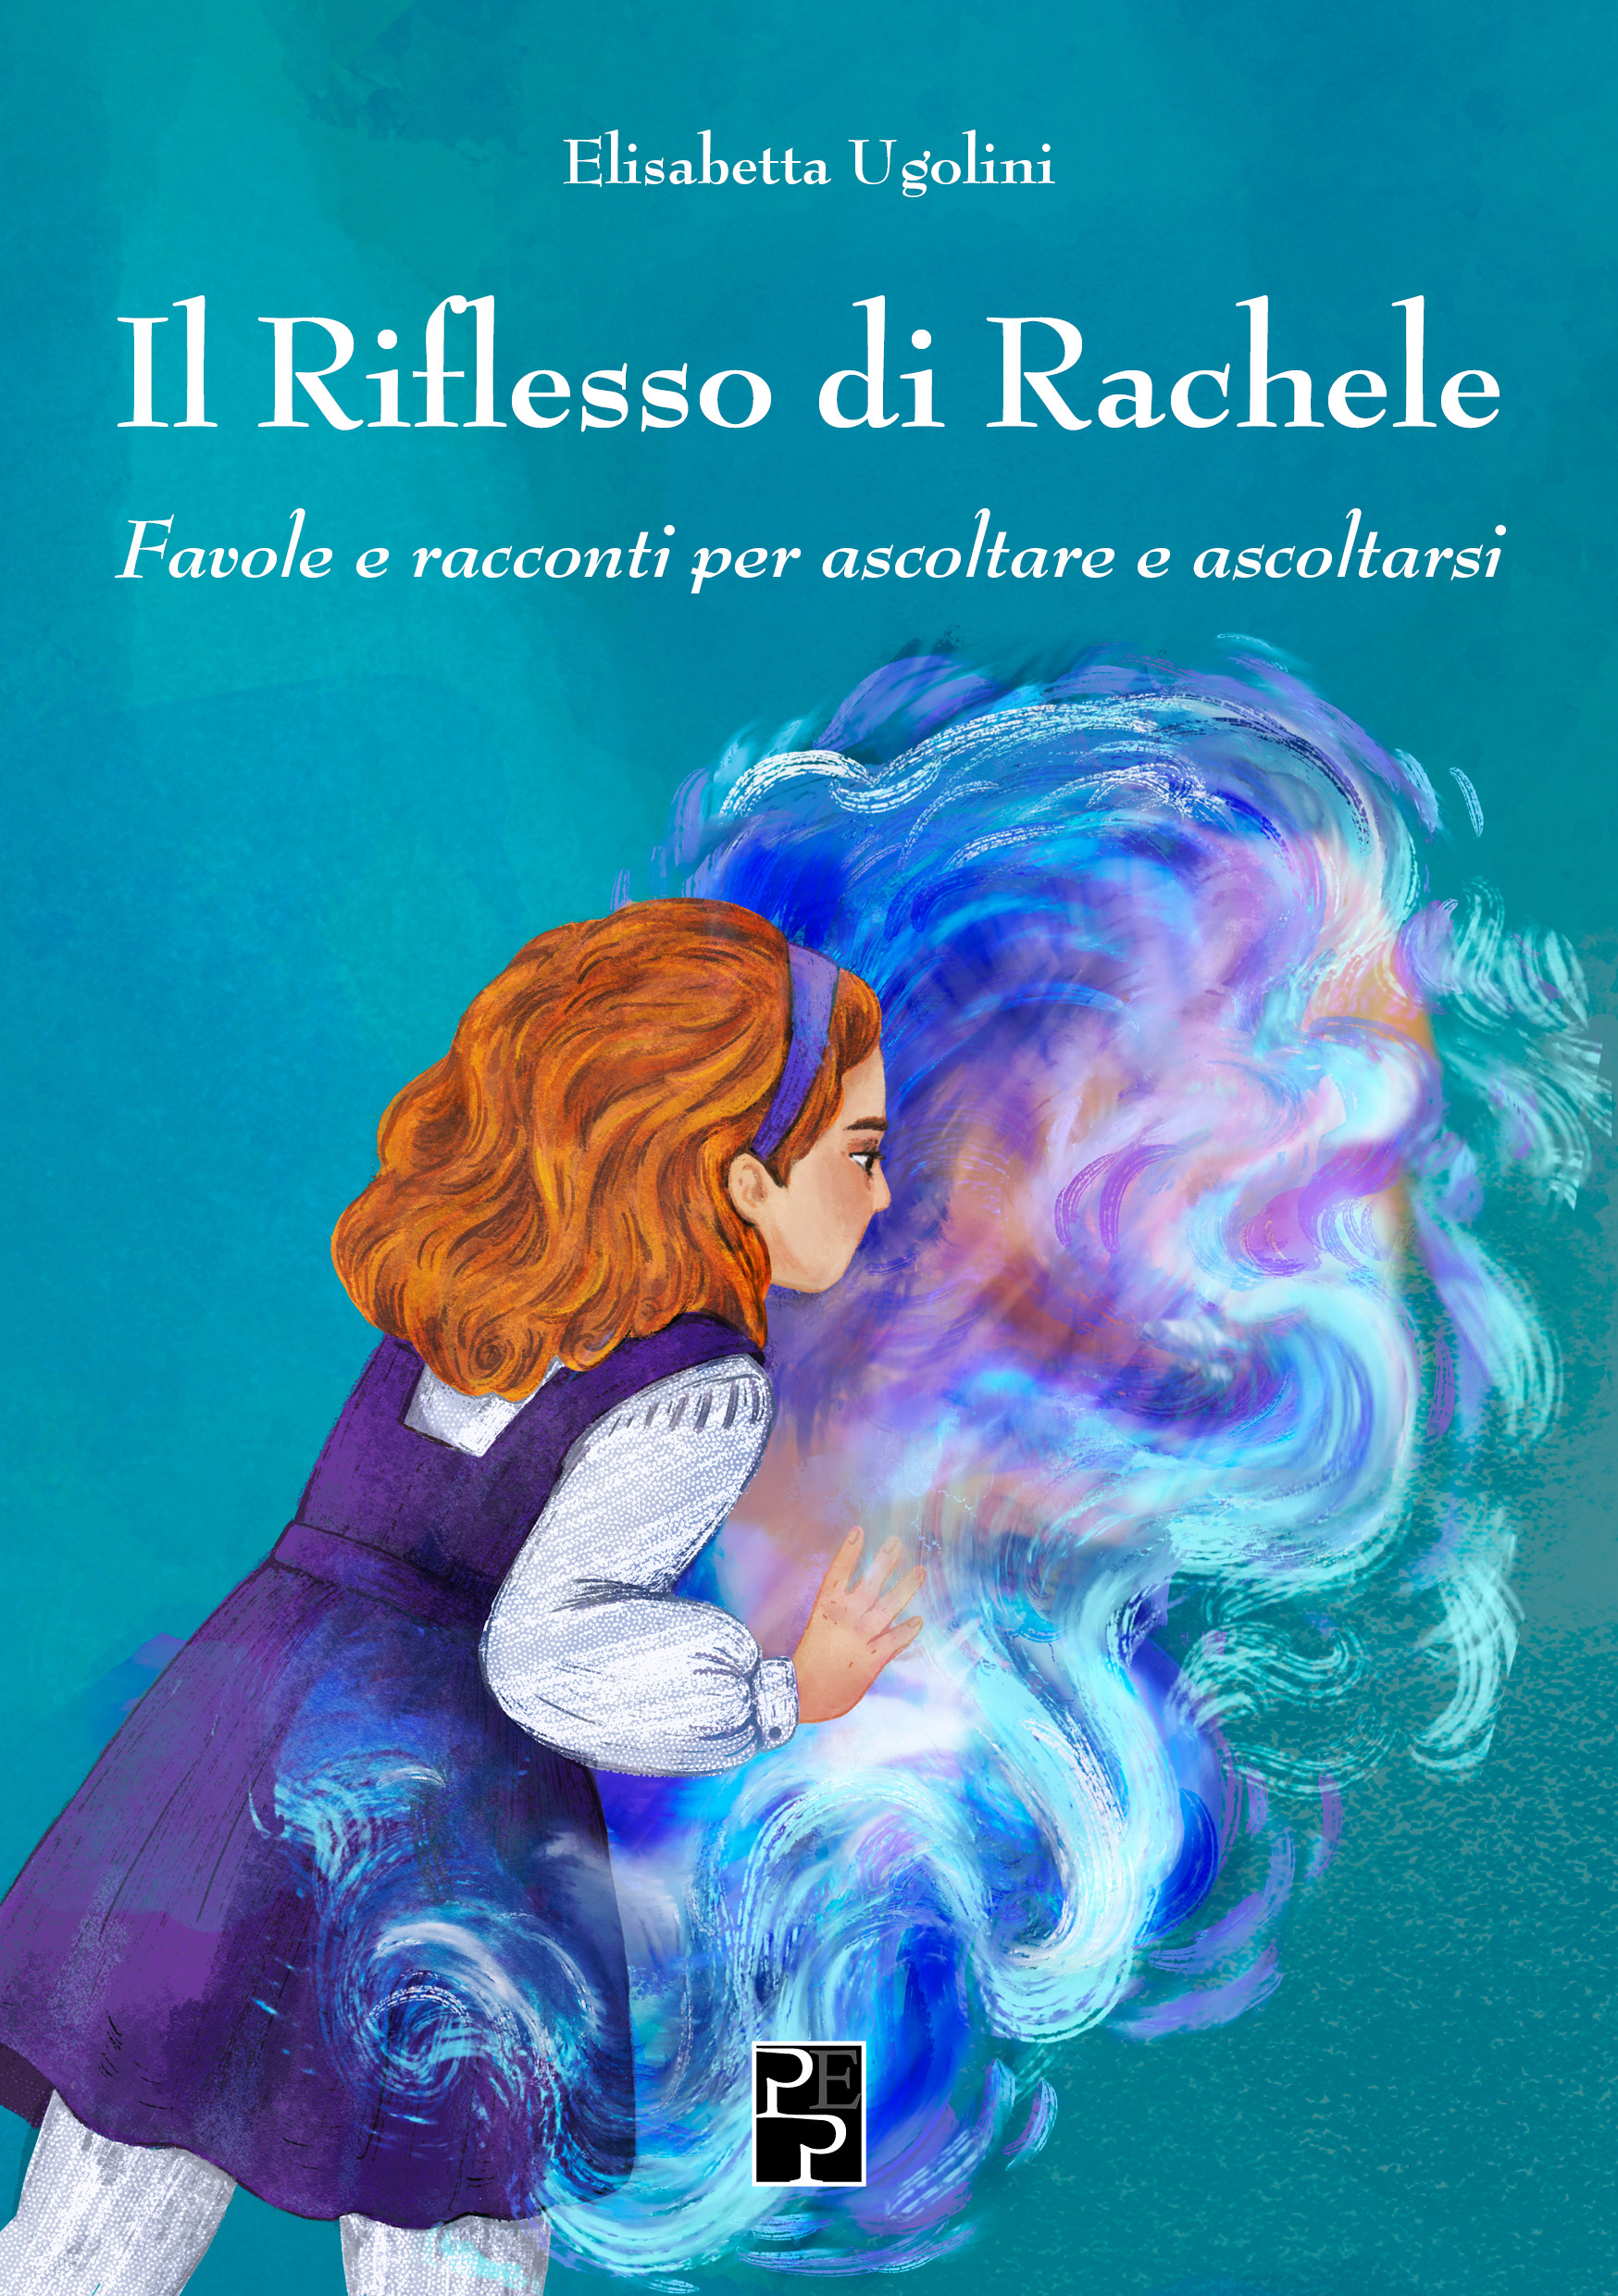 Il_Riflesso_Rachele__COVER_PROVV